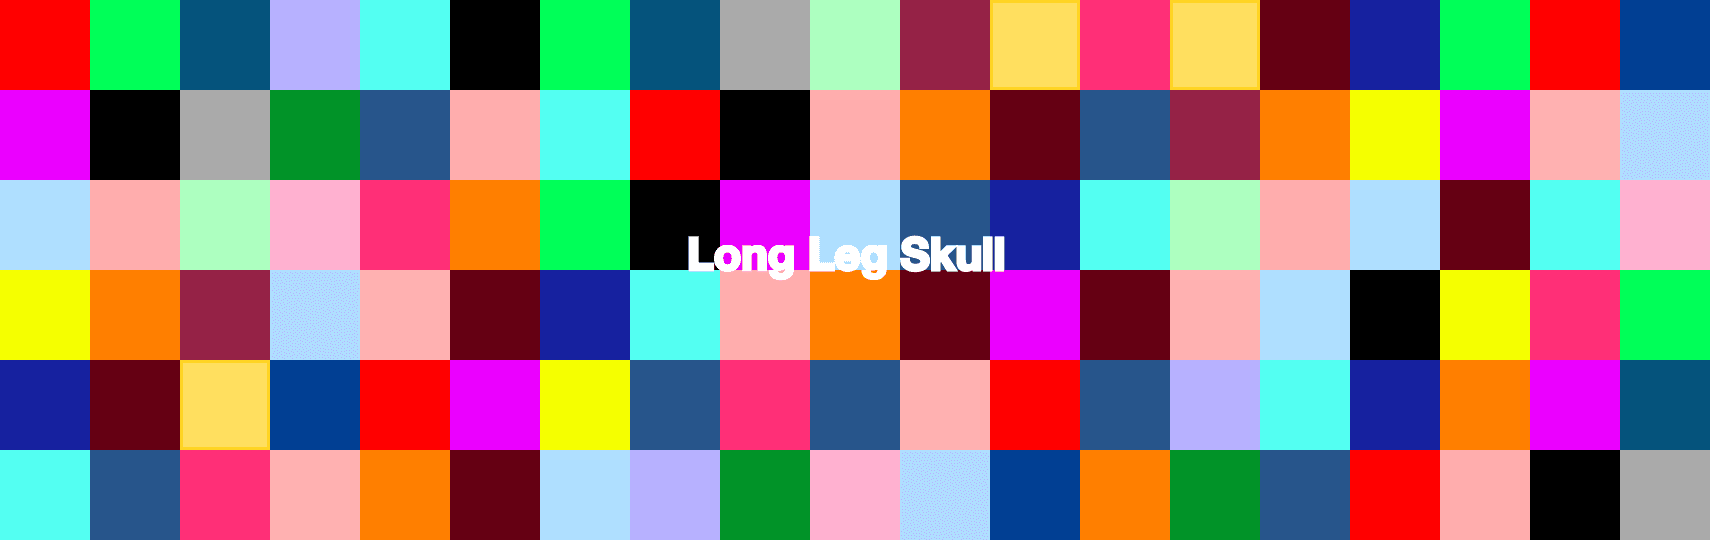 LongLegSkull 橫幅